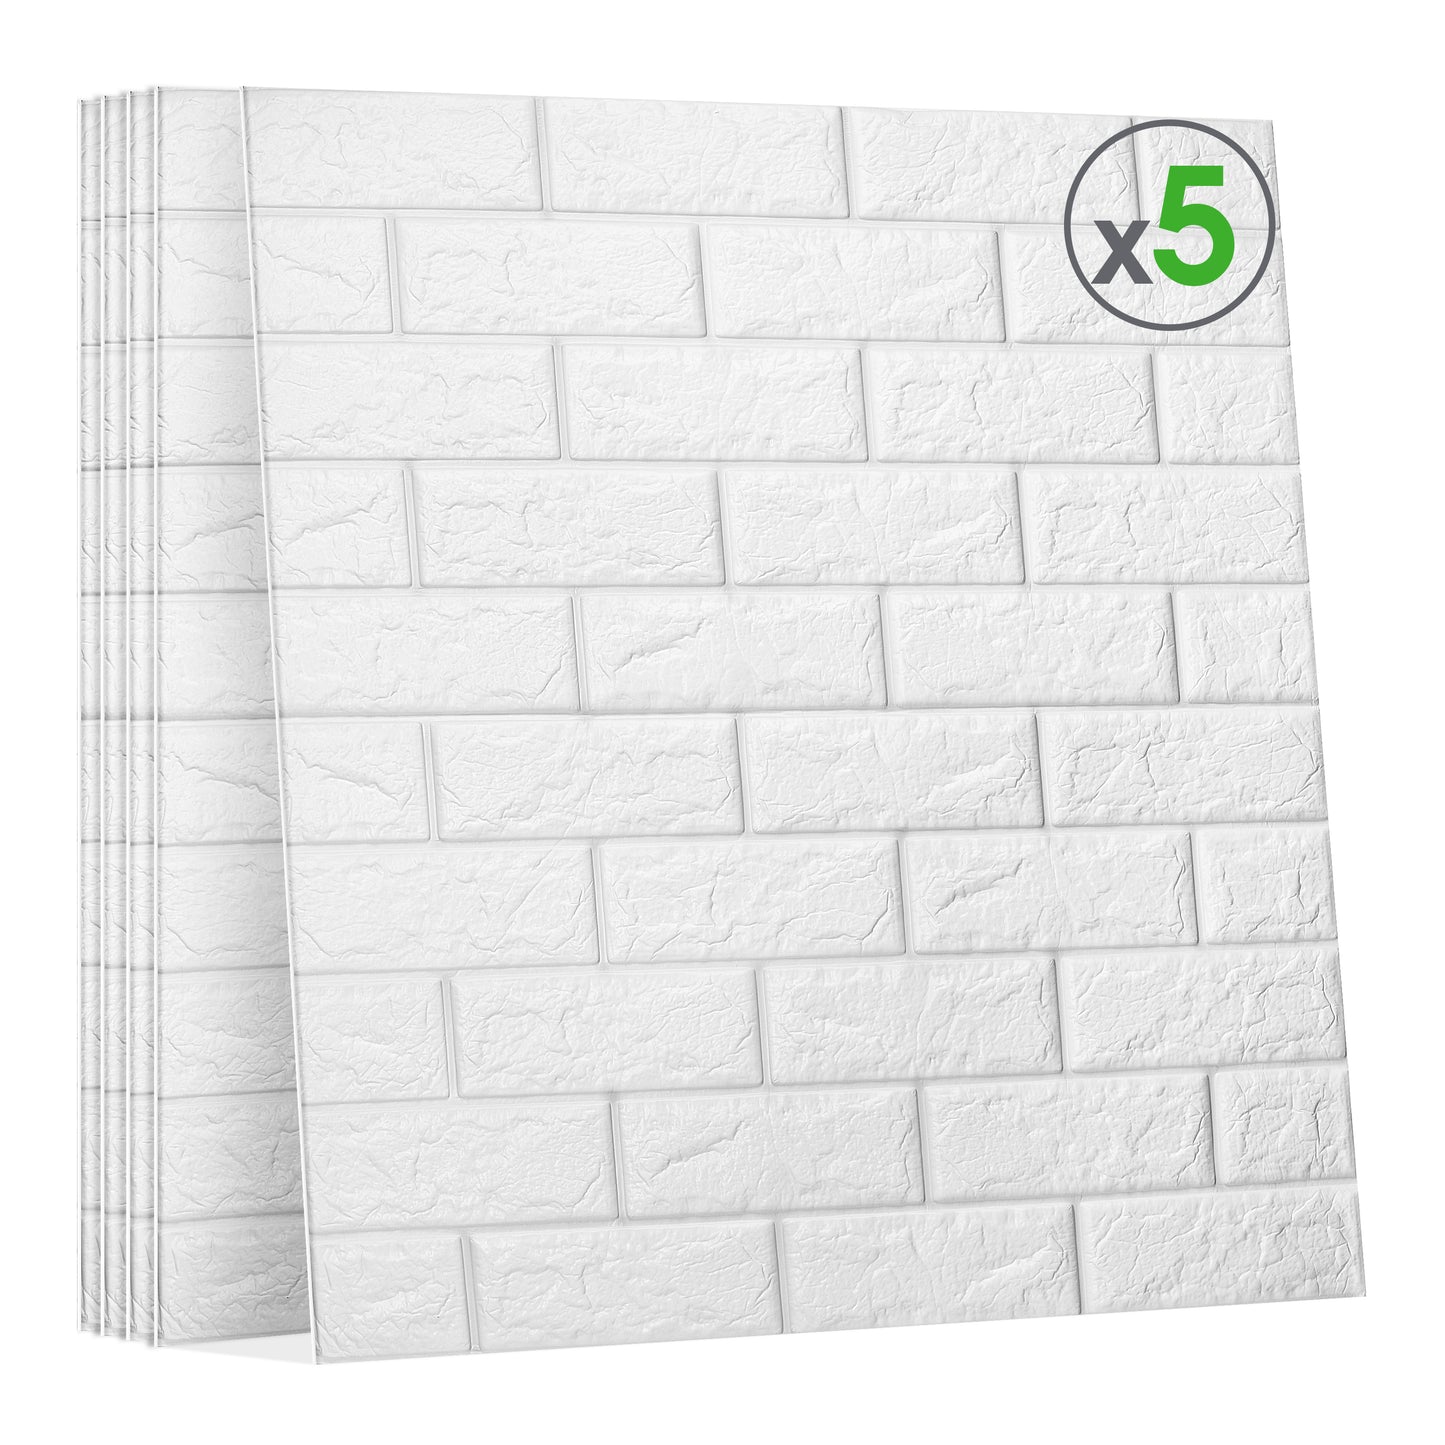 3D Brick Wallpaper (Pack of 5) 